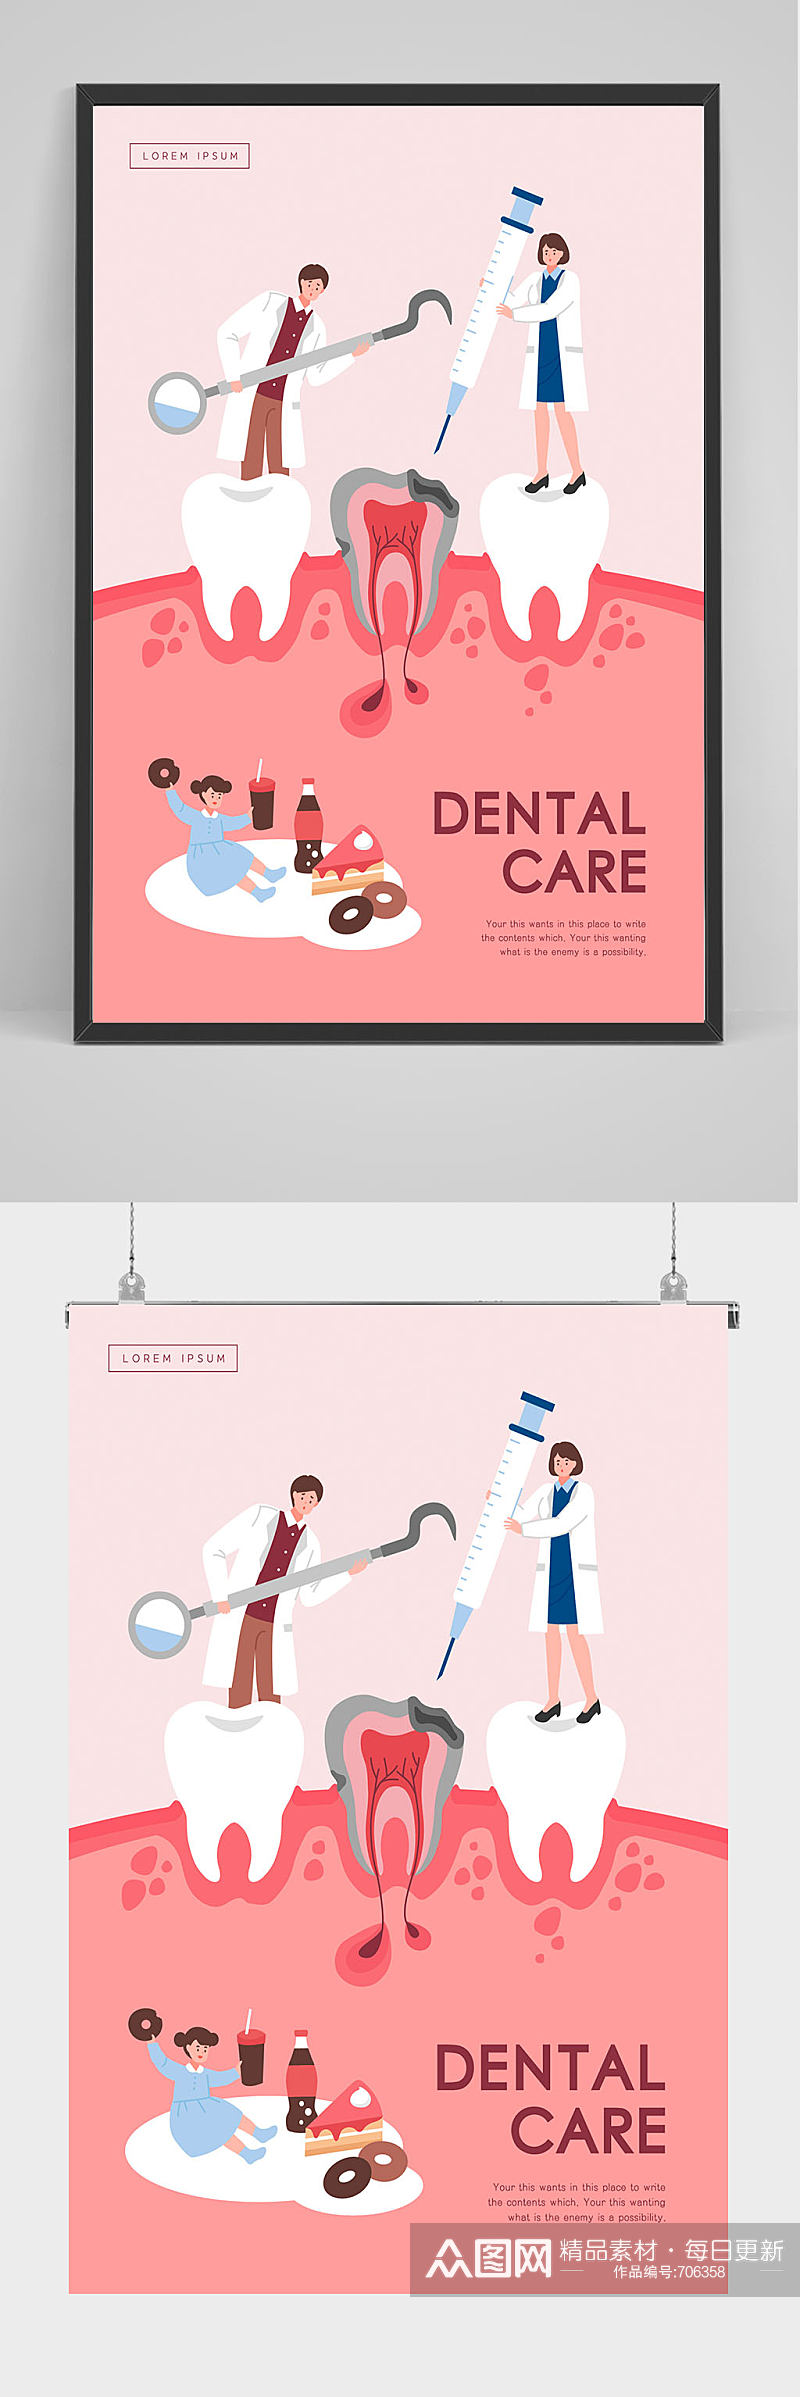 口腔医院 矢量创意牙科海报设计素材